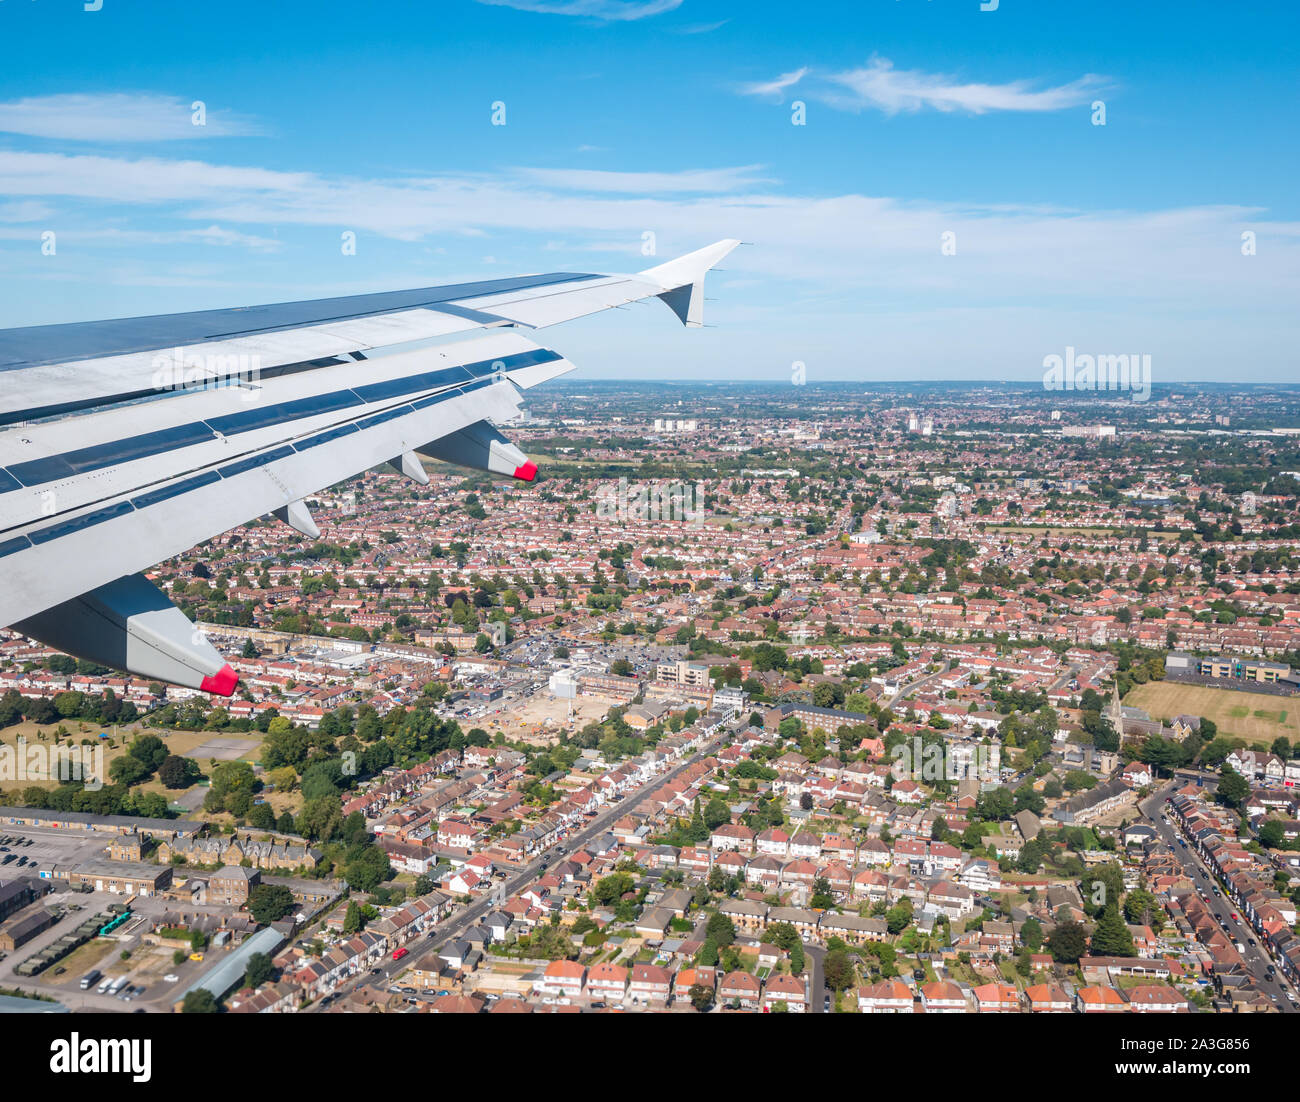 Vue depuis la fenêtre de l'avion sur les rues résidentielles en approche sur l'aéroport de Heathrow, Londres, Angleterre, Royaume-Uni Banque D'Images